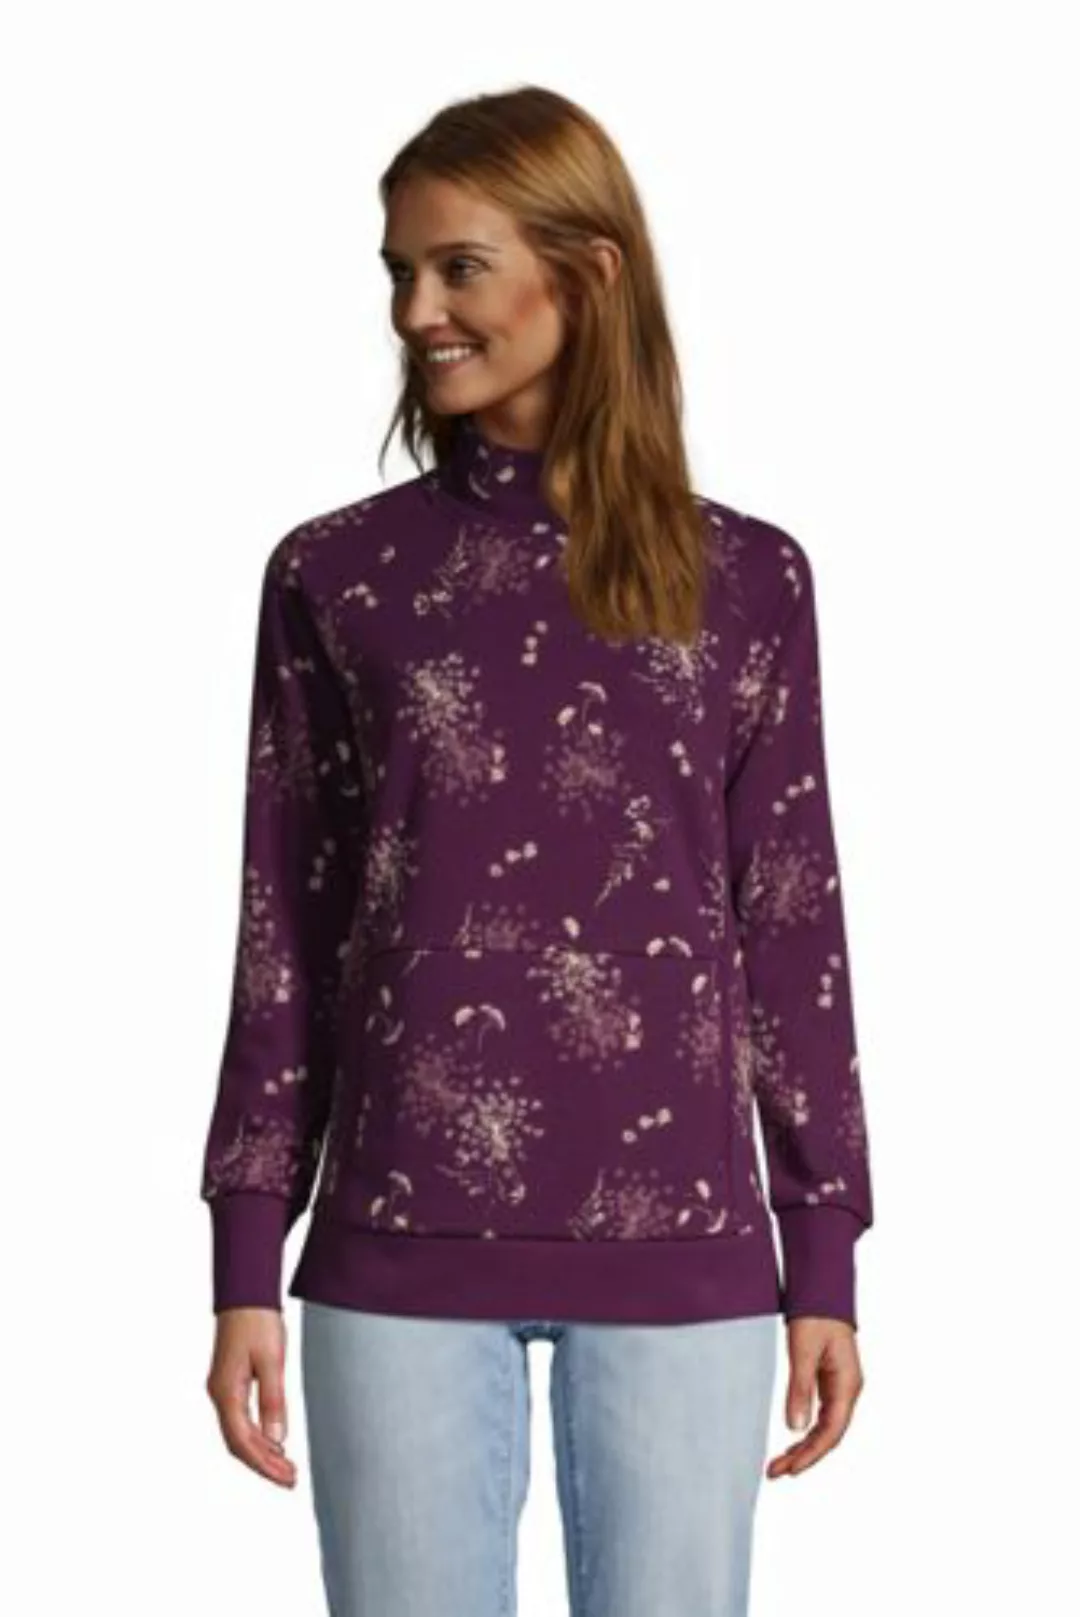 Sweatshirt mit Stehkragen, Damen, Größe: M Normal, Lila, Baumwoll-Mischung, günstig online kaufen